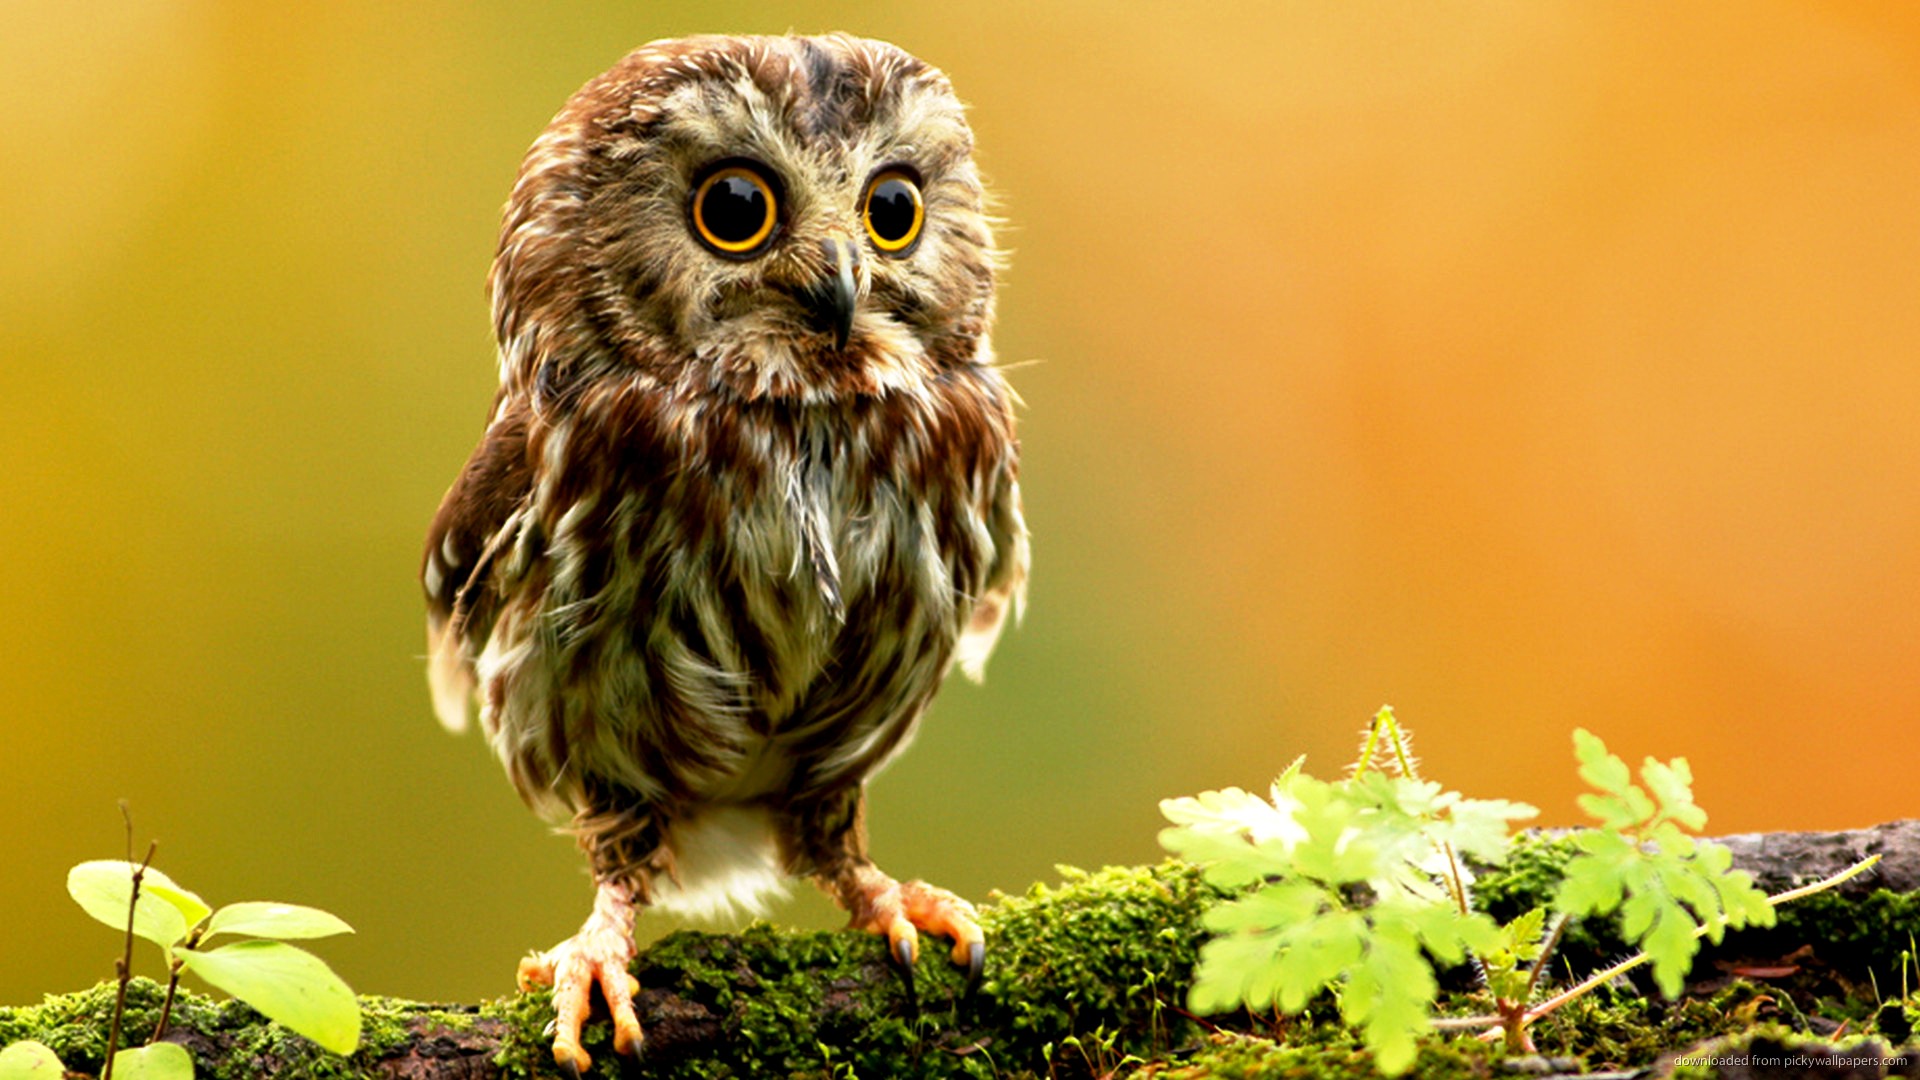 Cute Animal Wallpaper For Desktop Little Owl